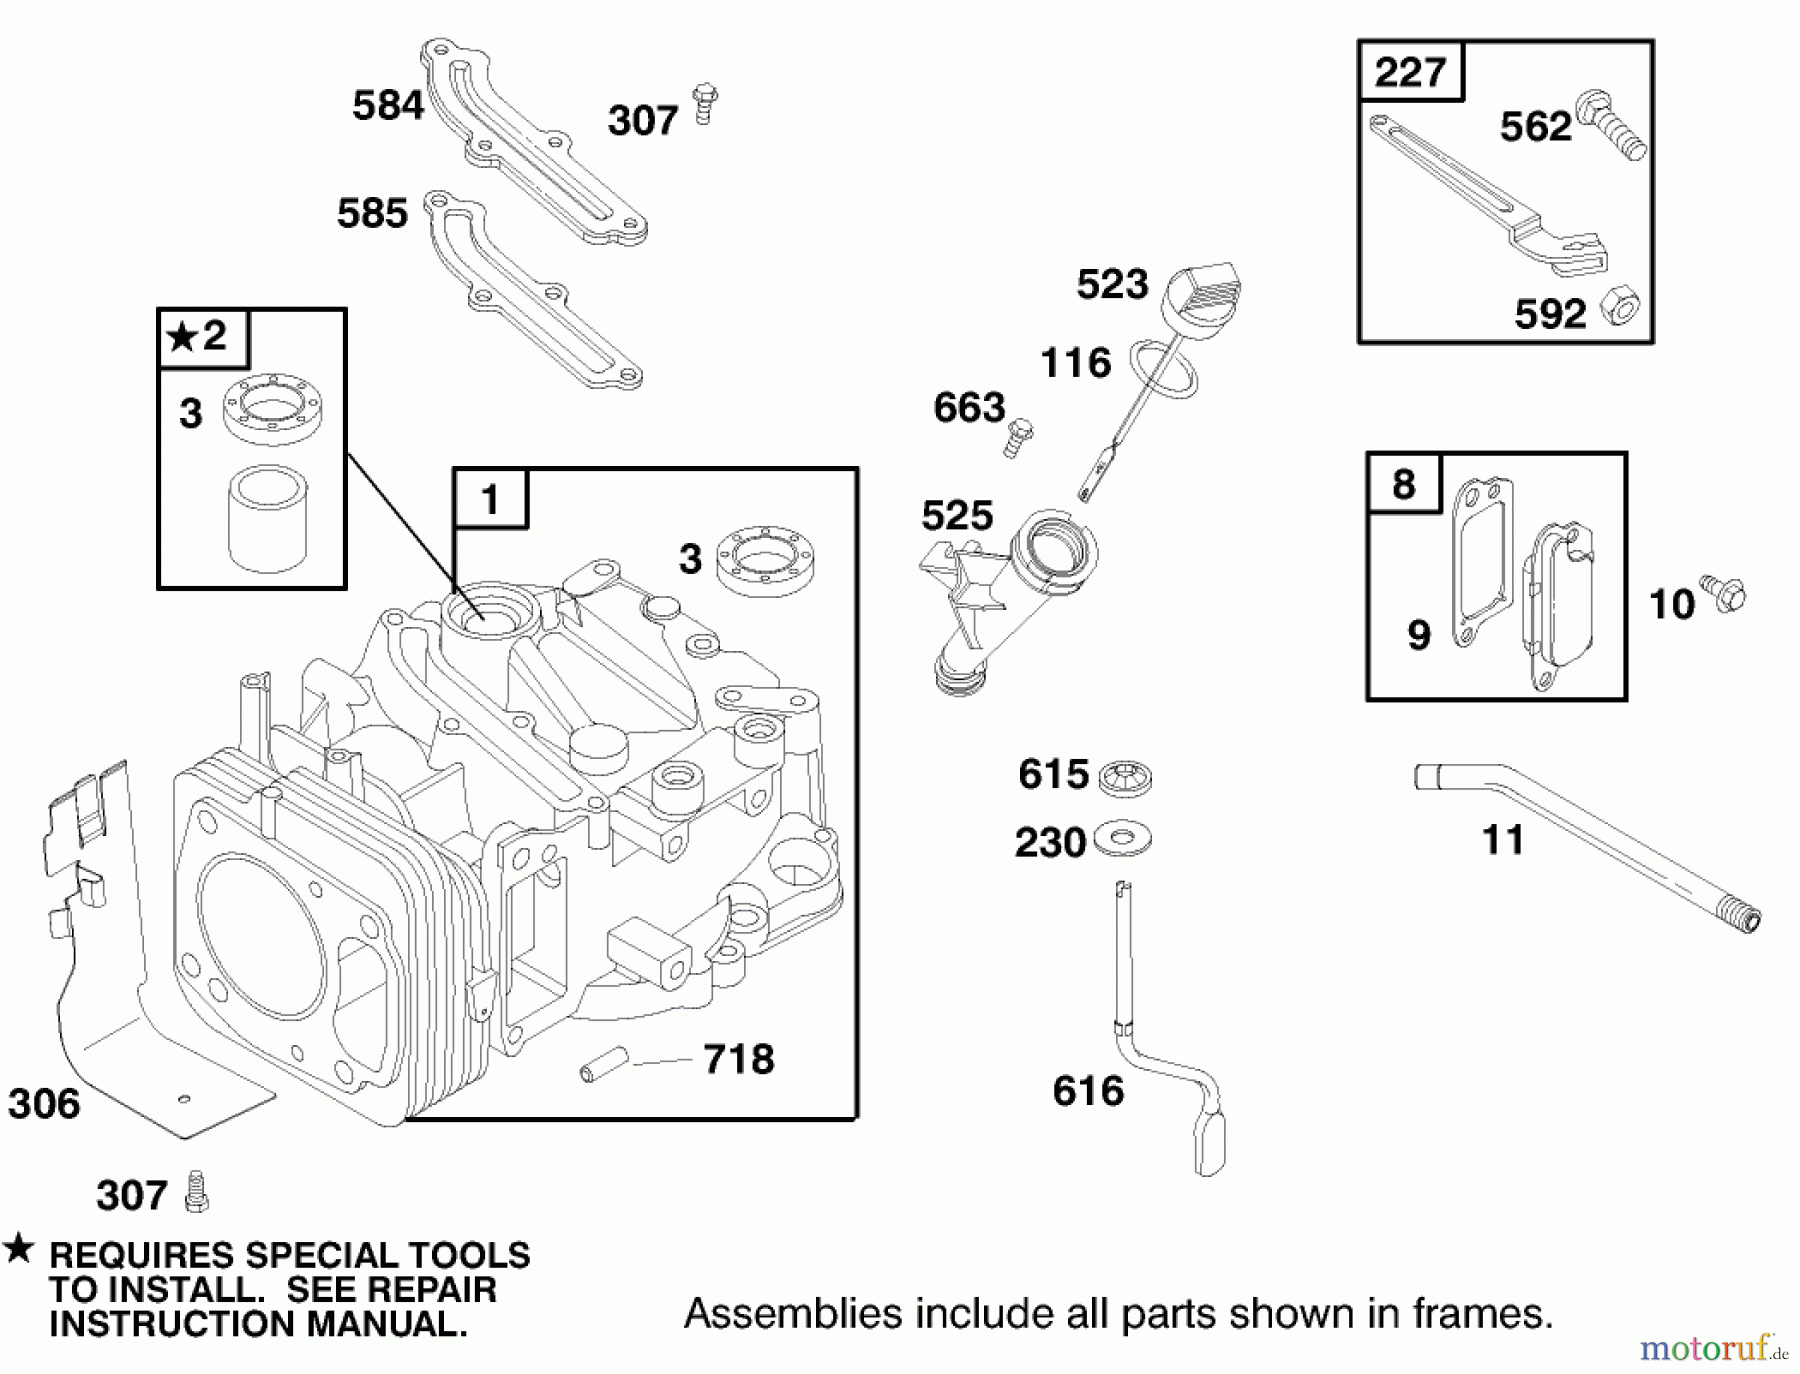  Toro Neu Mowers, Walk-Behind Seite 2 22160 - Toro Recycler Mower, 1998 (8900001-8999999) ENGINE GTS-200 #1